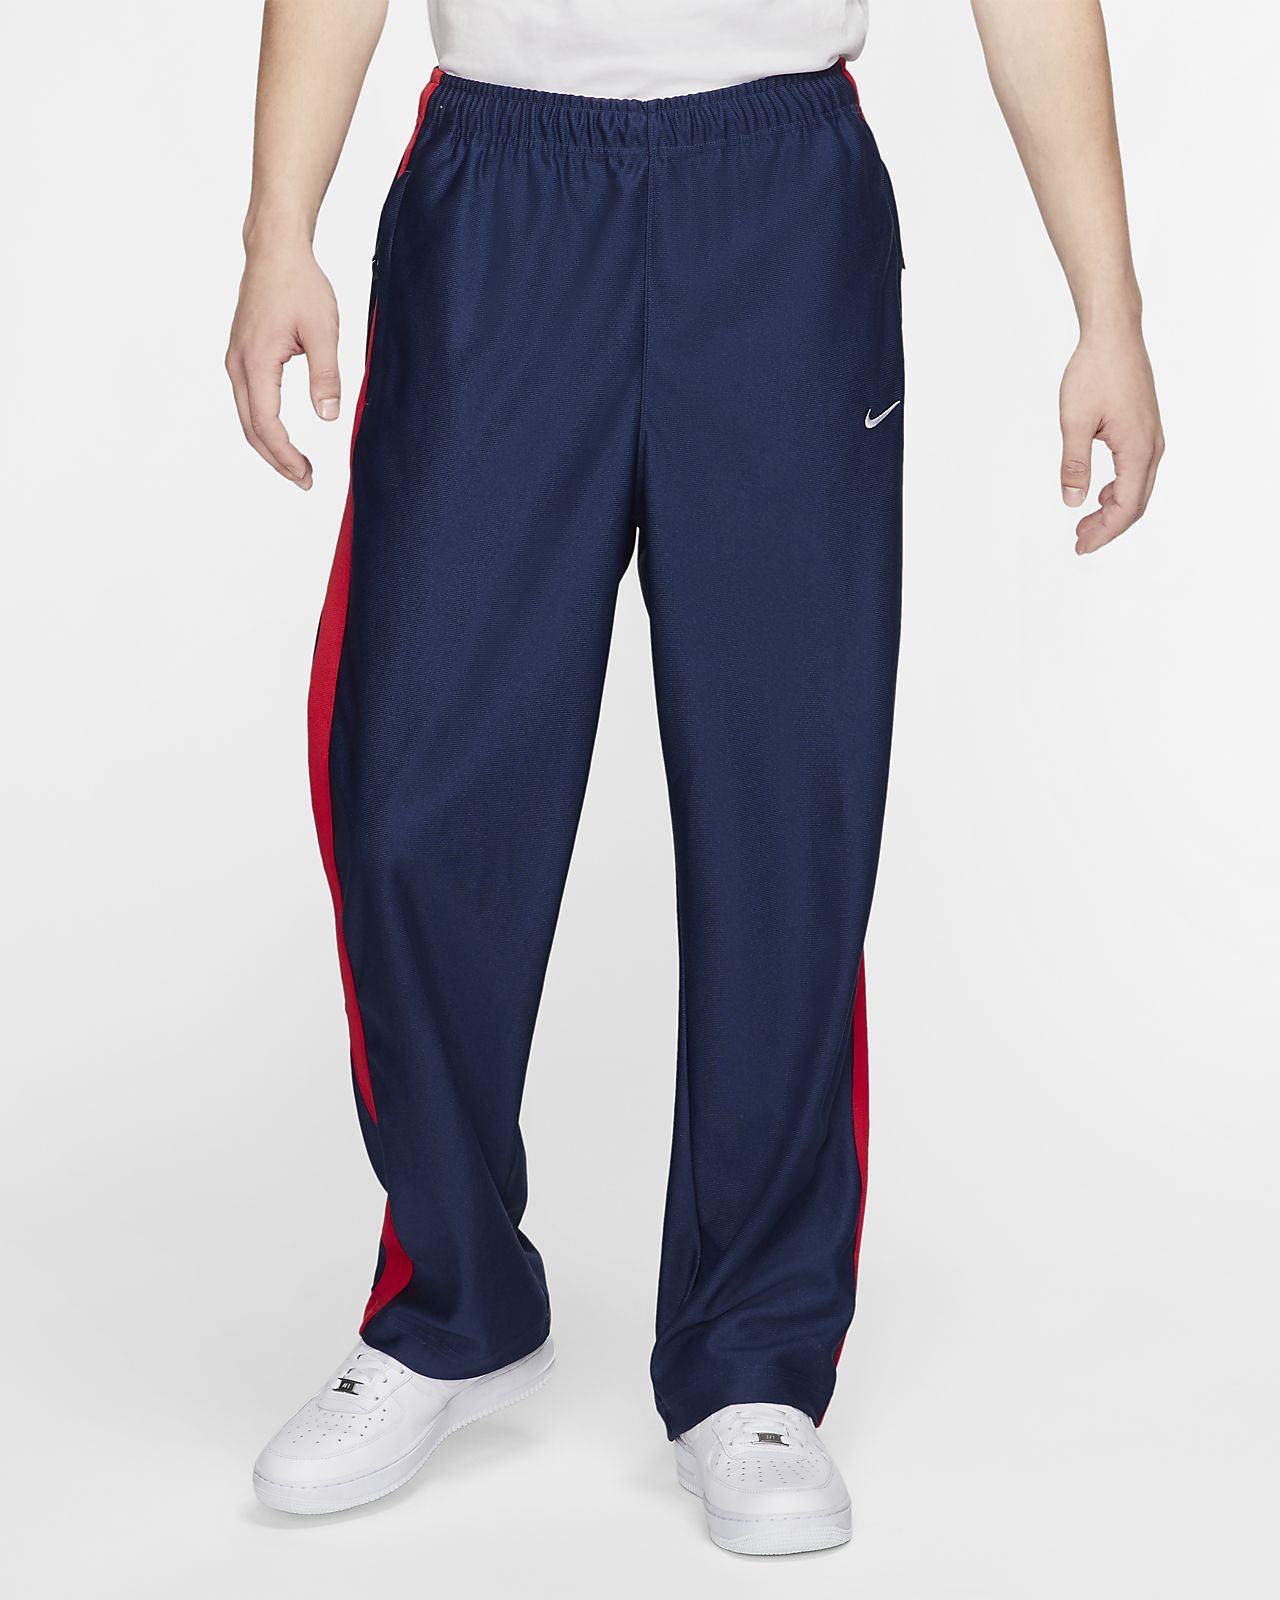 Nike Men's Swoosh Striped Pants. Nike JP